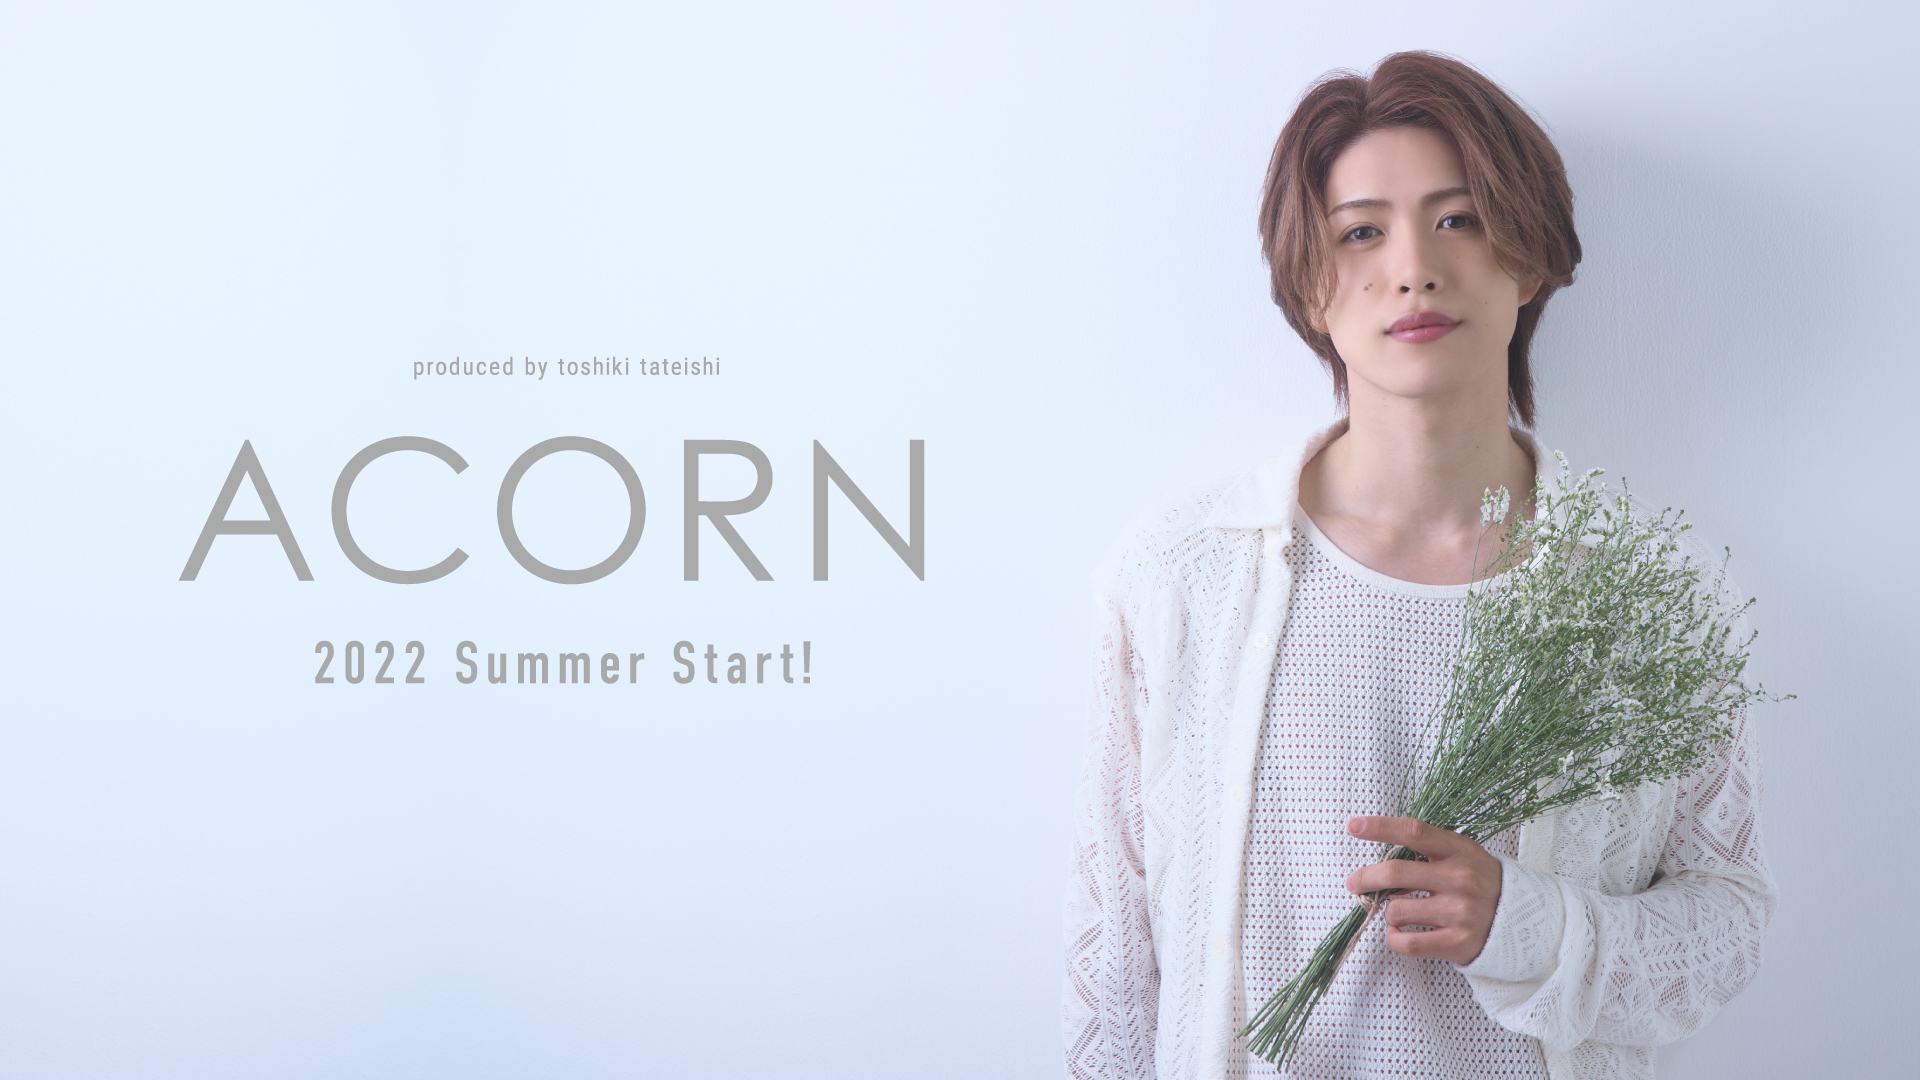 立石俊樹プロデュースブランド『ACORN』オリジナルキャンドル3種セット 